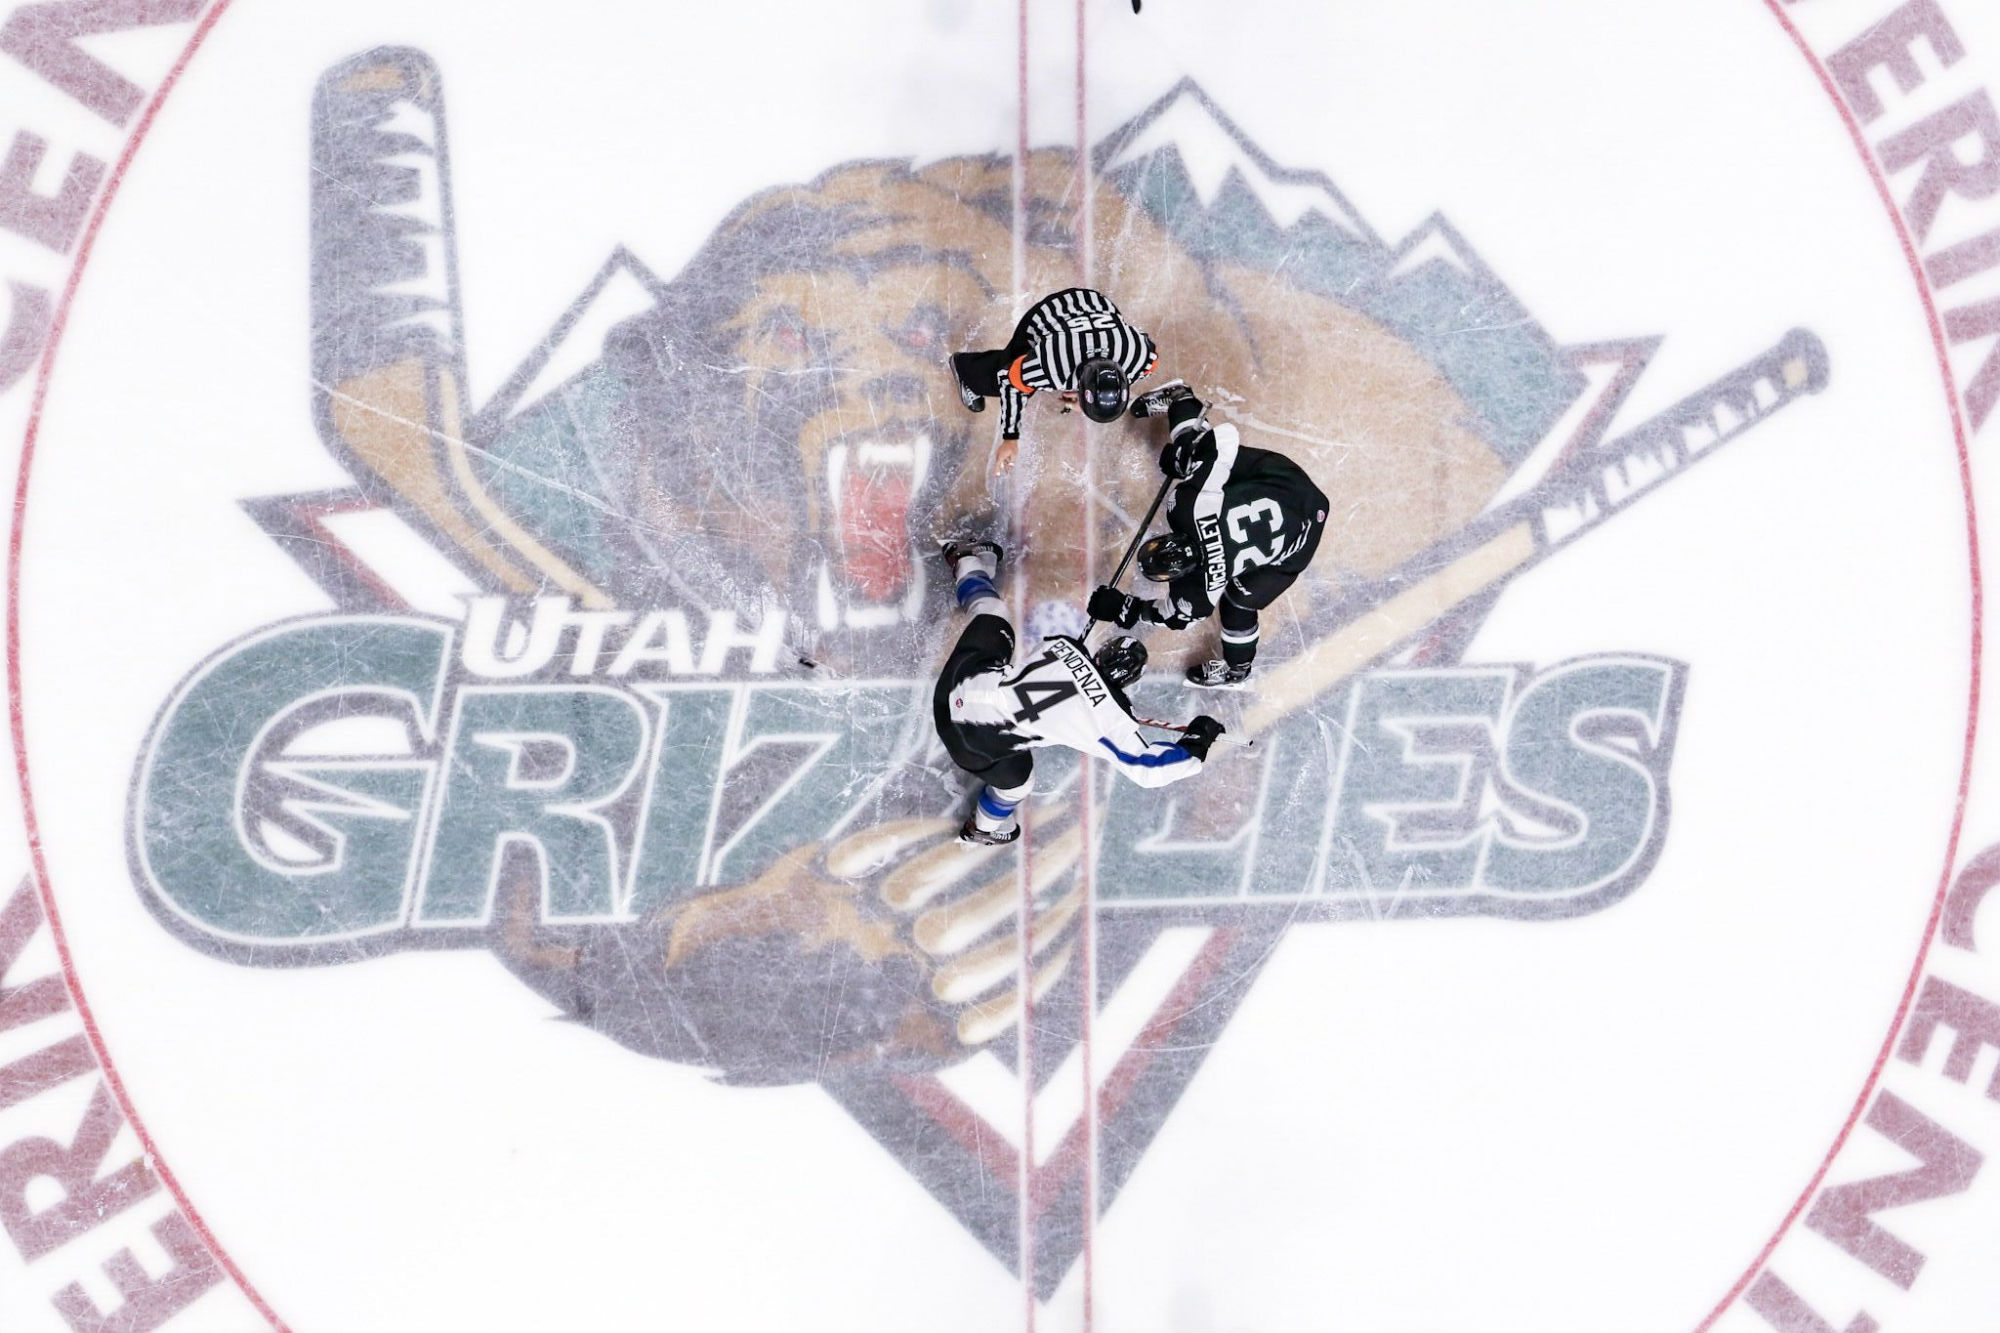 Utah Grizzlies ECHL Professional Ice Hockey Team Visit Utah